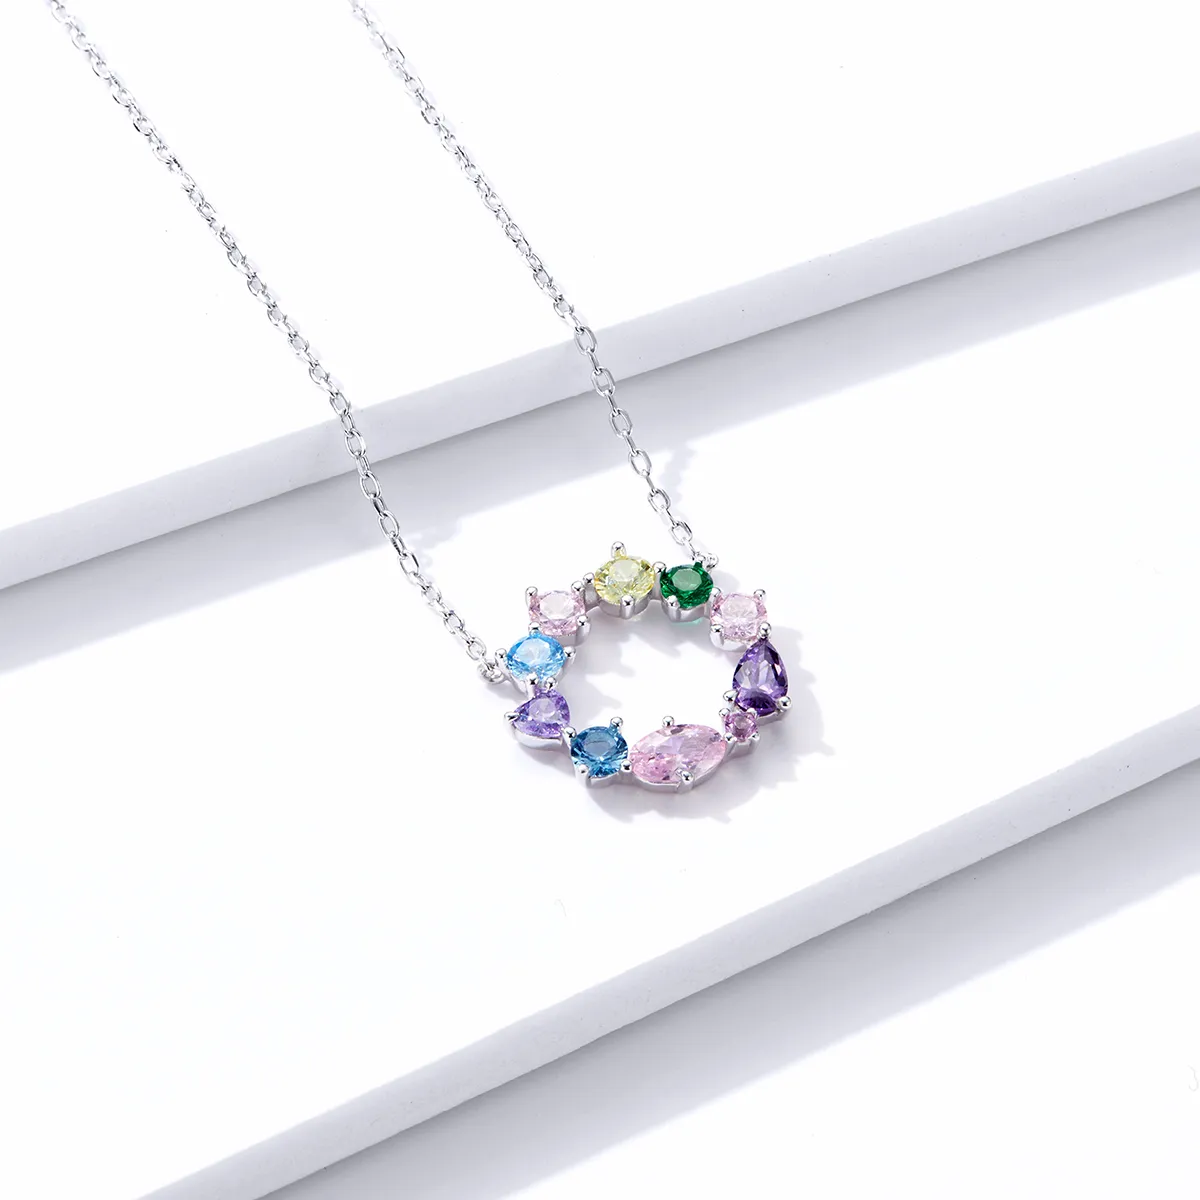 Pandora Style Silver Lucky Wreath Pendant Necklace - BSN178